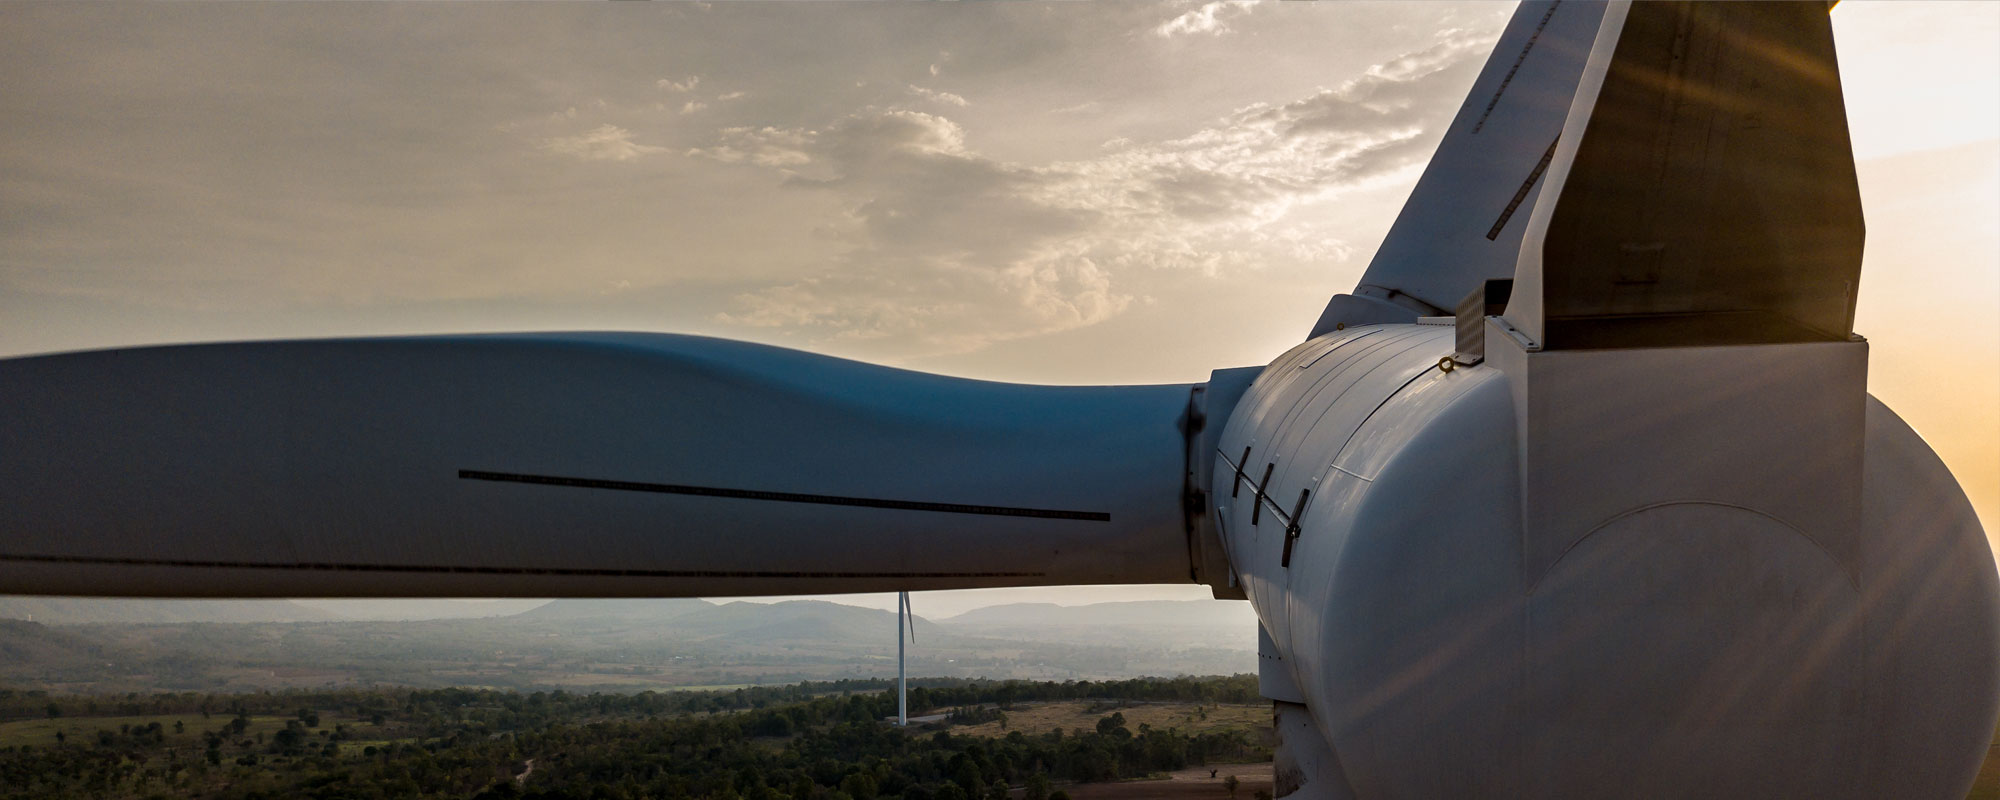 더 강력하고 더 효율적으로: TRB가 풍력 산업을 변화시키는 방법